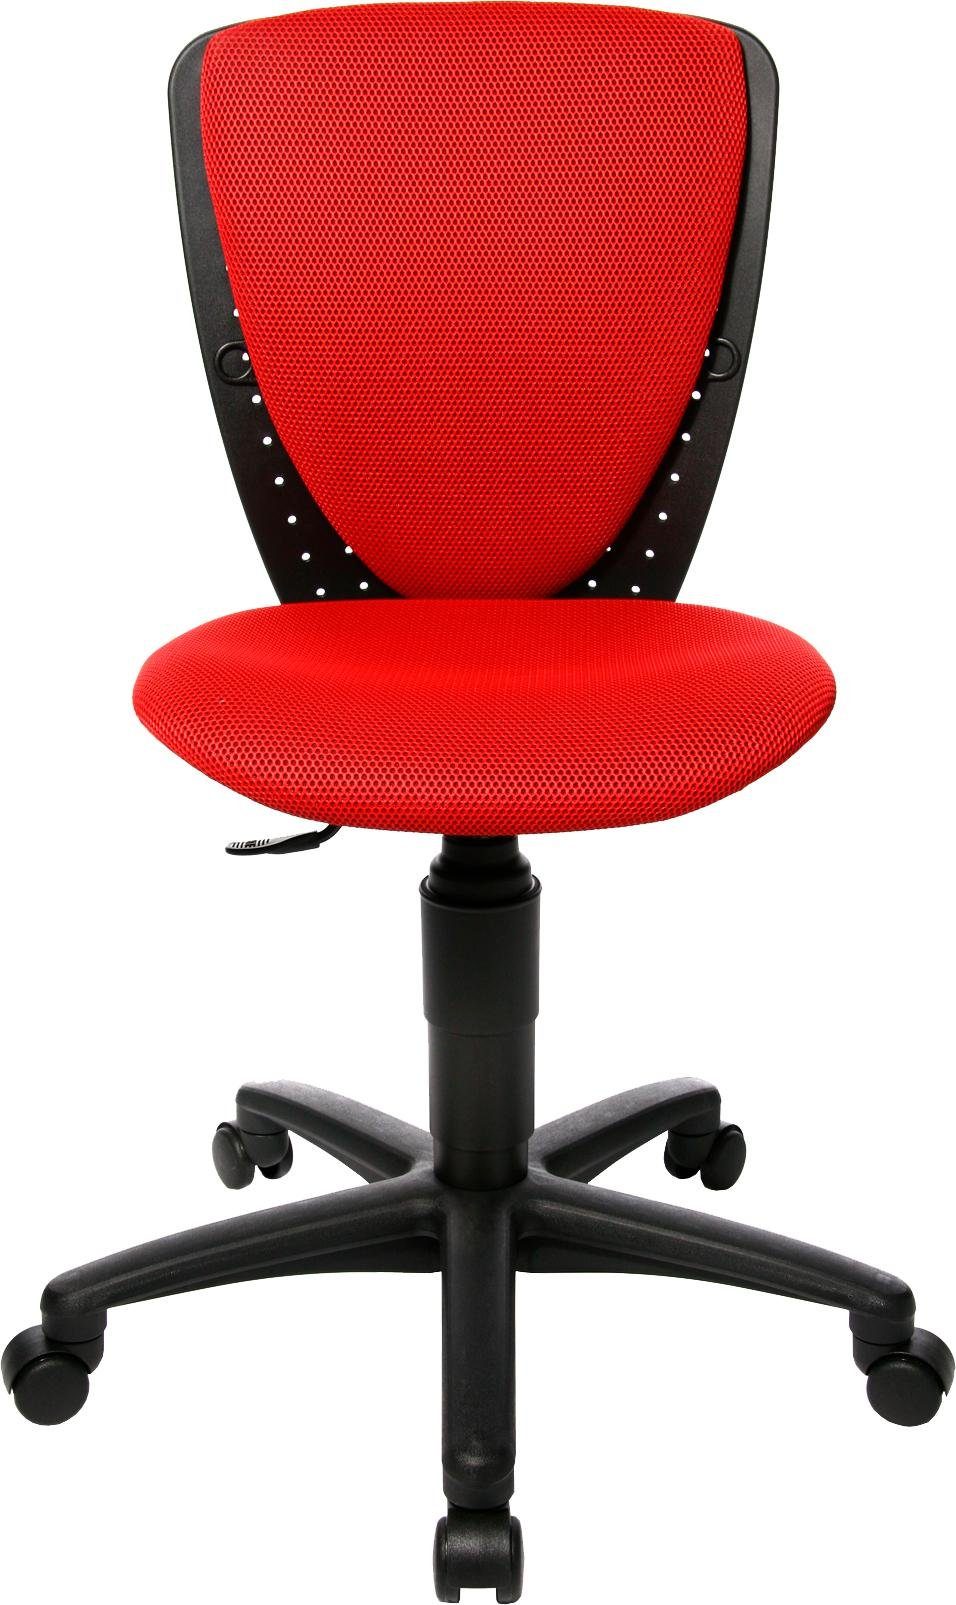 High S'cool Bürostuhl rot-schwarz TOPSTAR